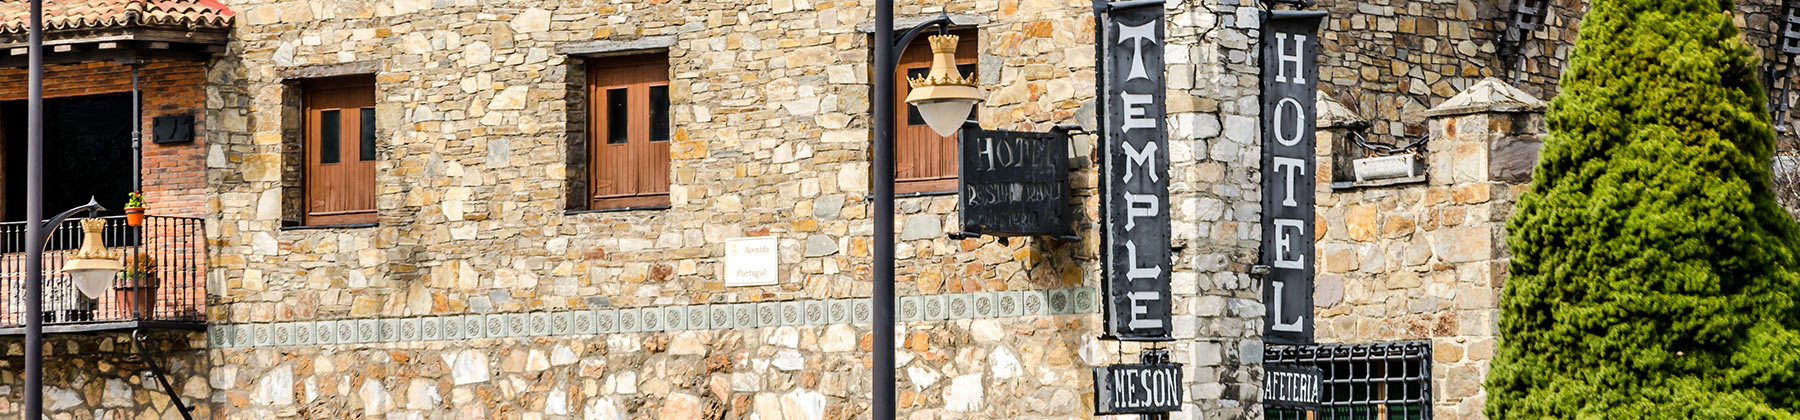 Hotel Temple Ponferrada  header